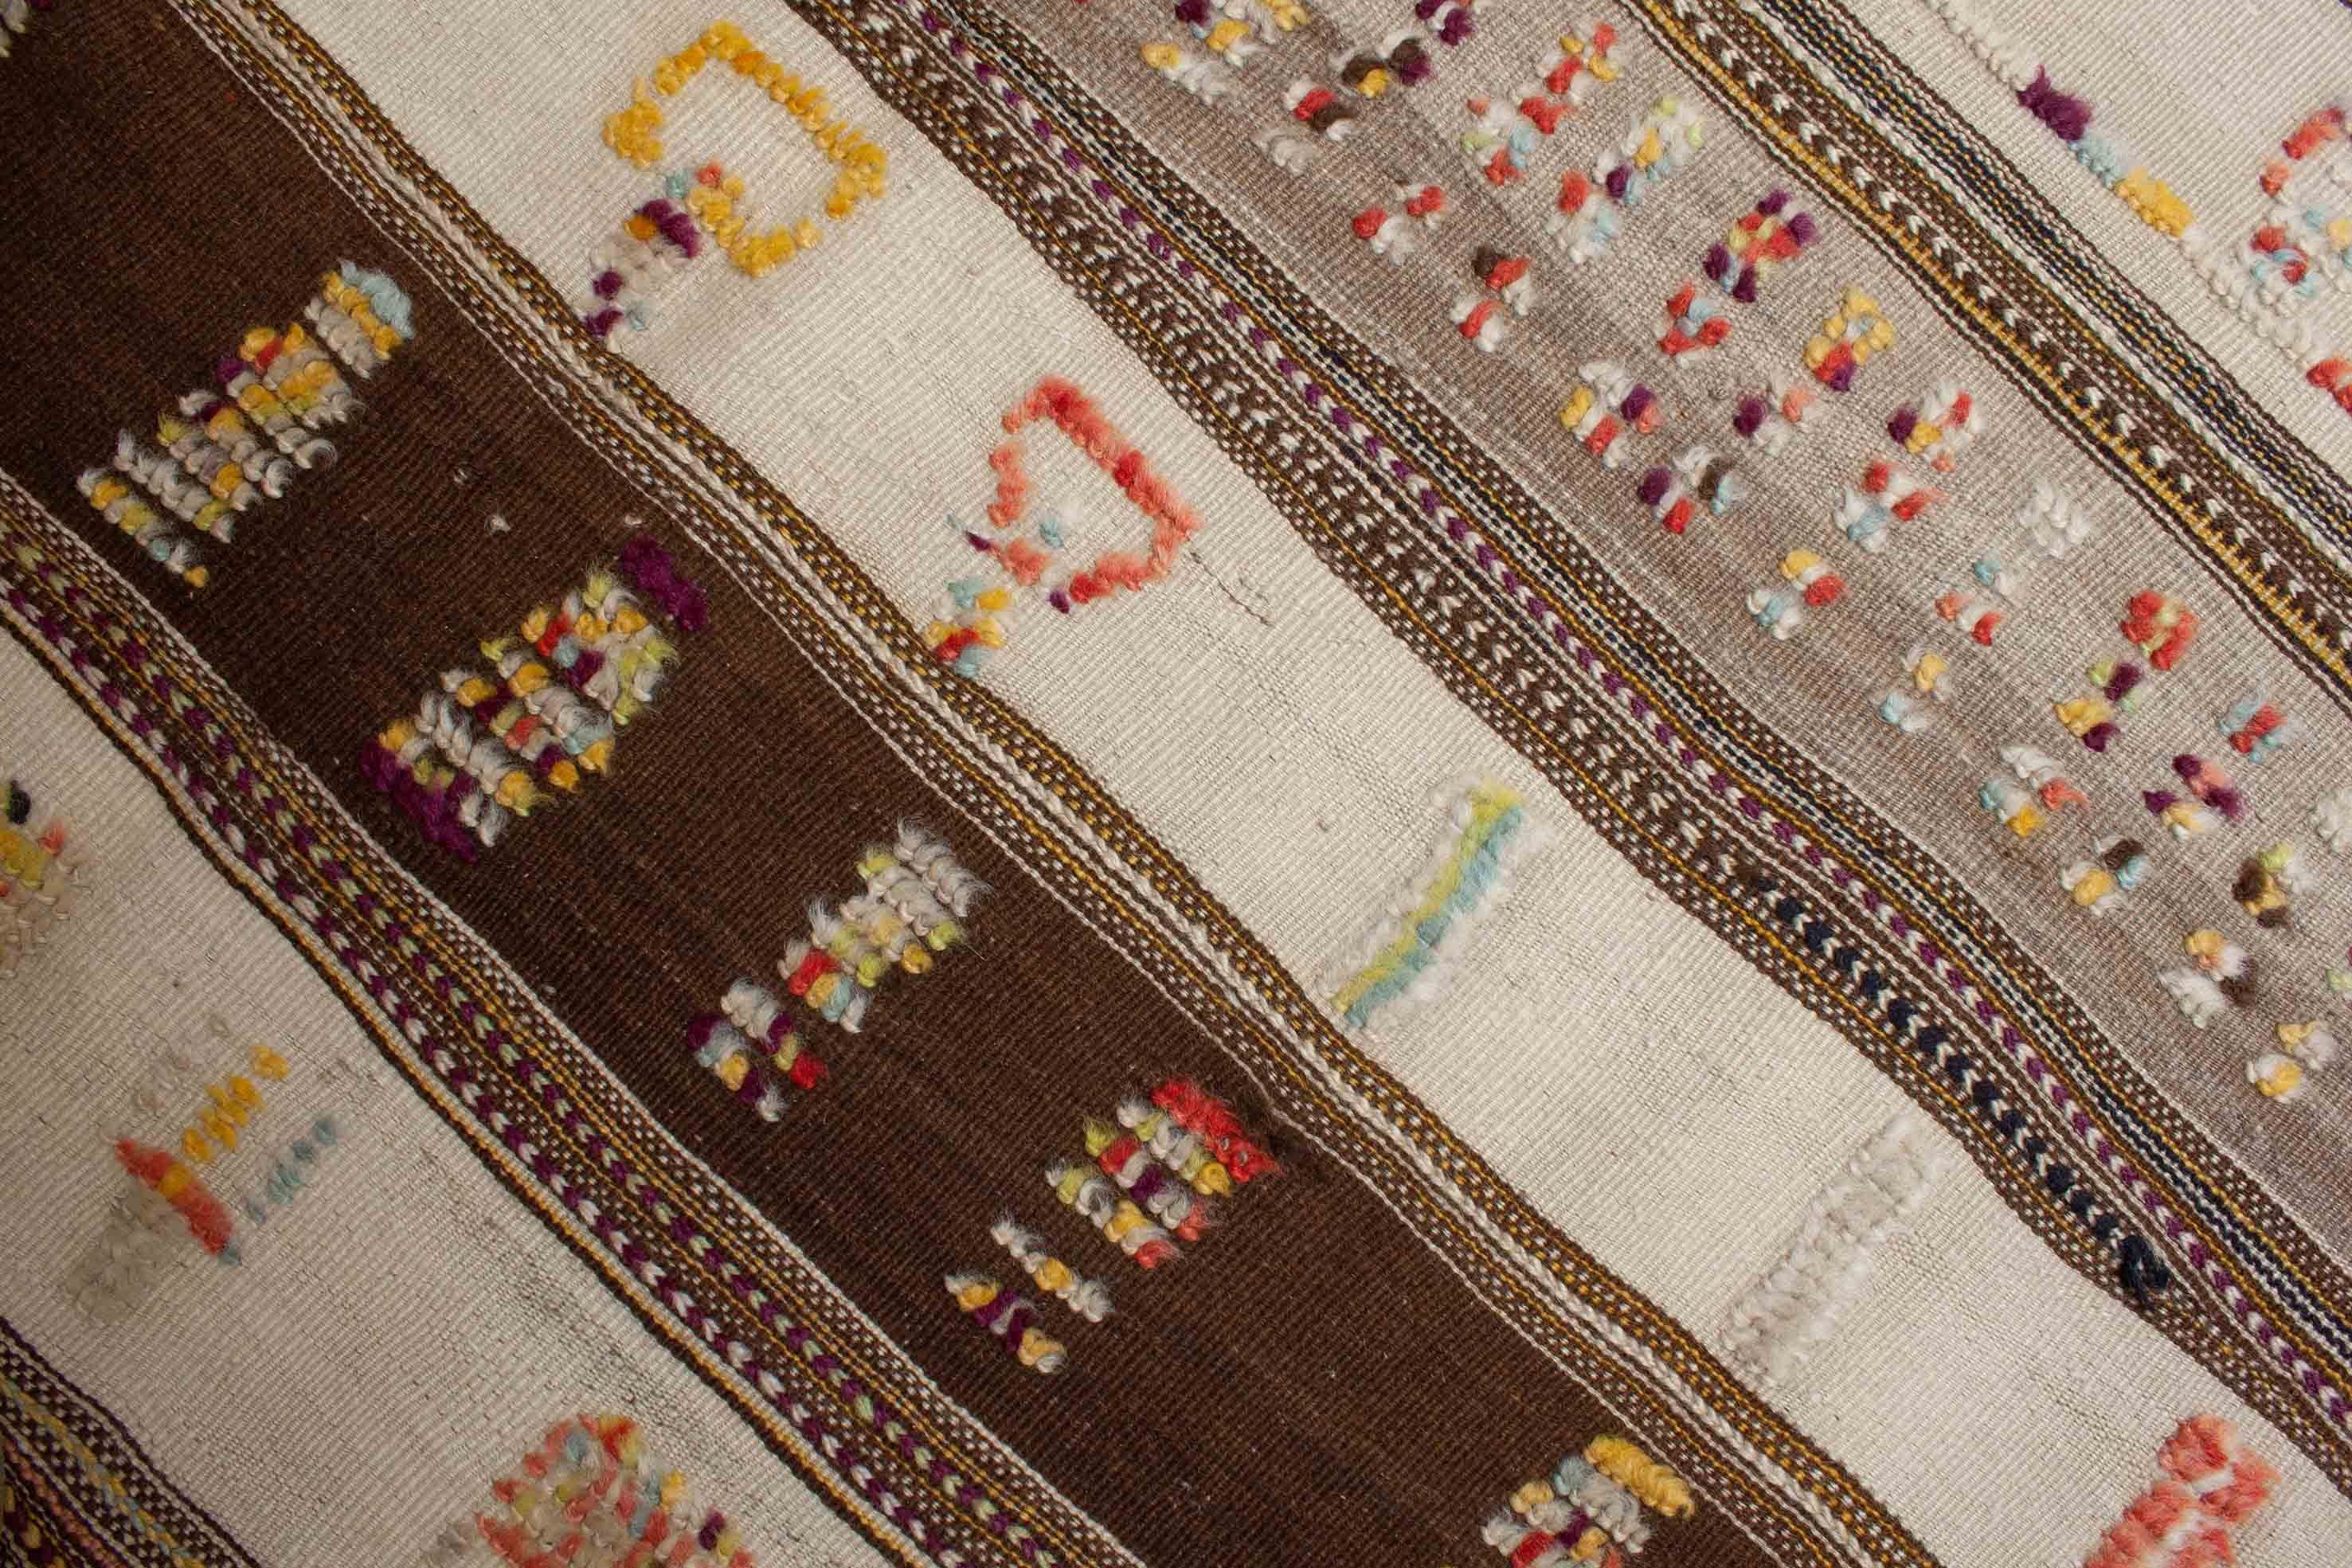 Eine Fotoaufnahme eines Marokkanischer Kelim Teppichs.